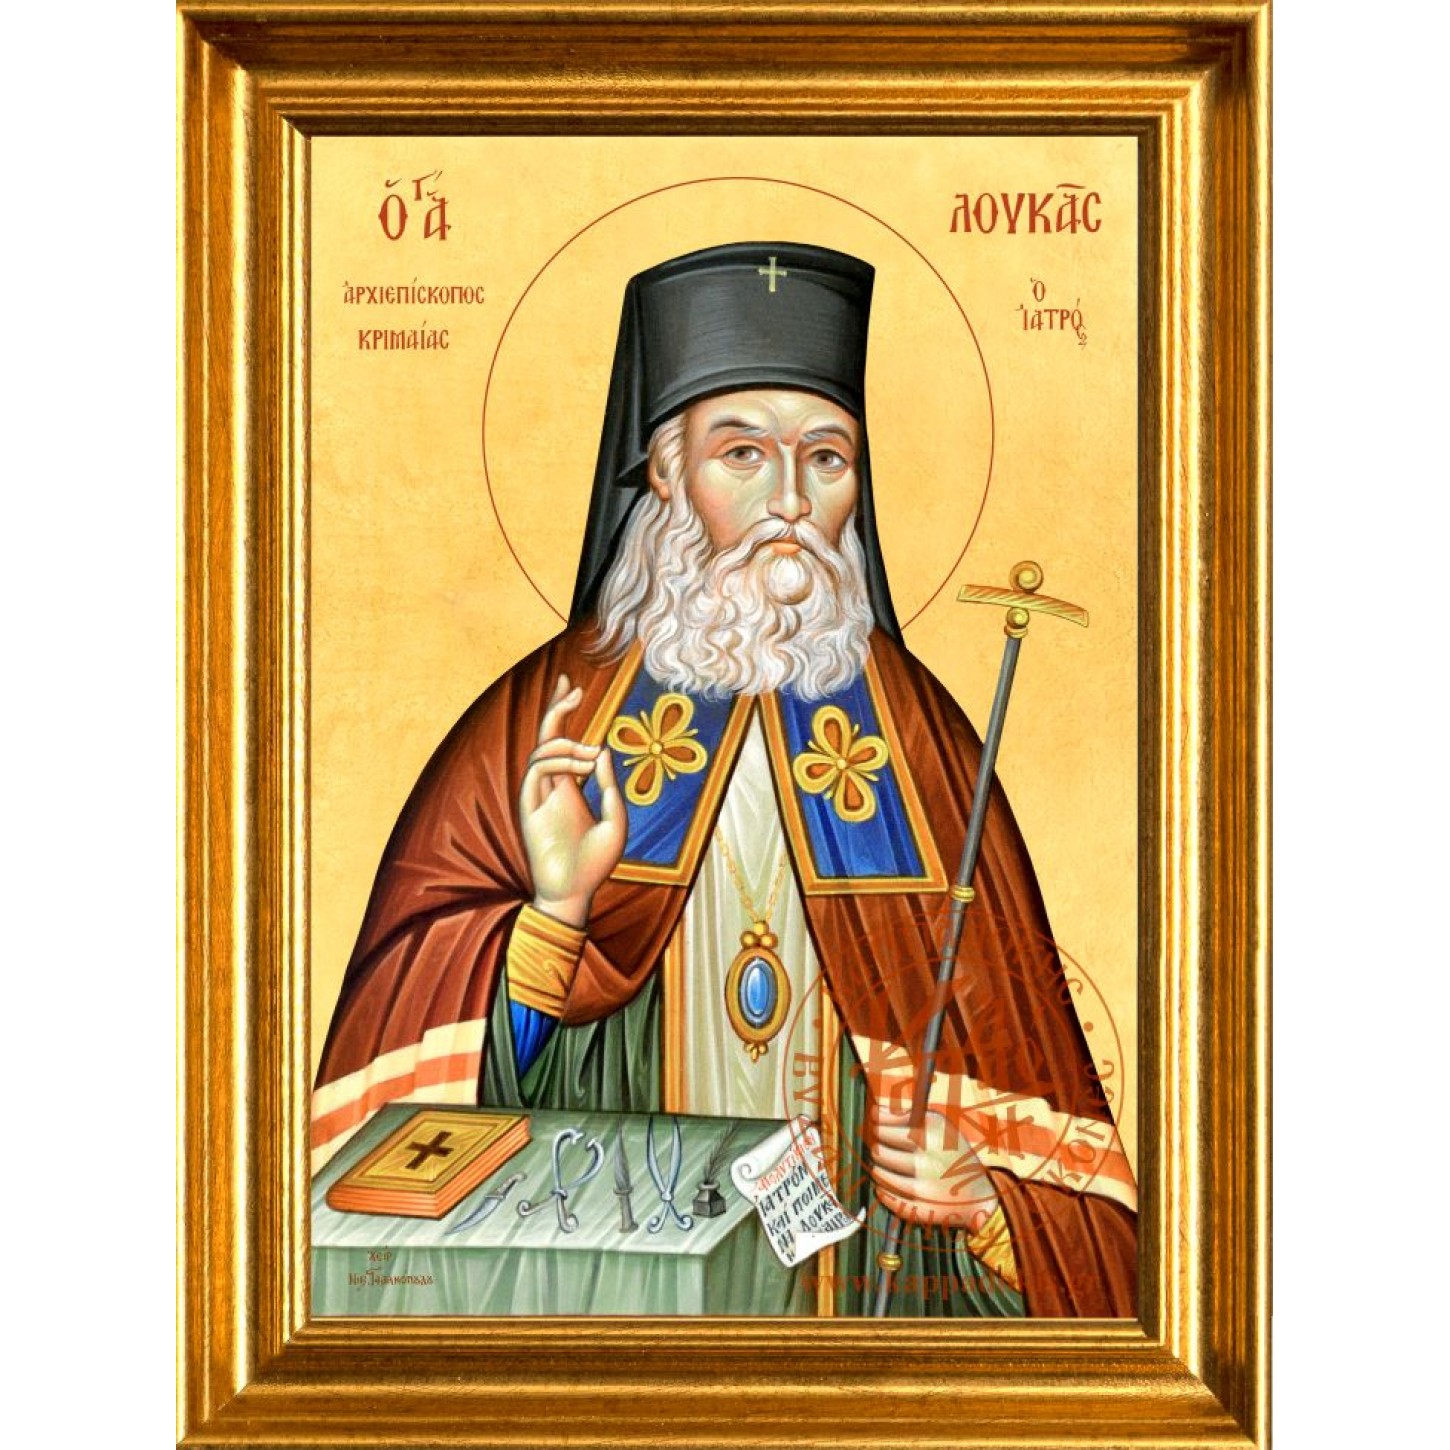 Άγιος Λουκάς ο ιατρός Αρχιεπίσκοπος Κριμαίας 1